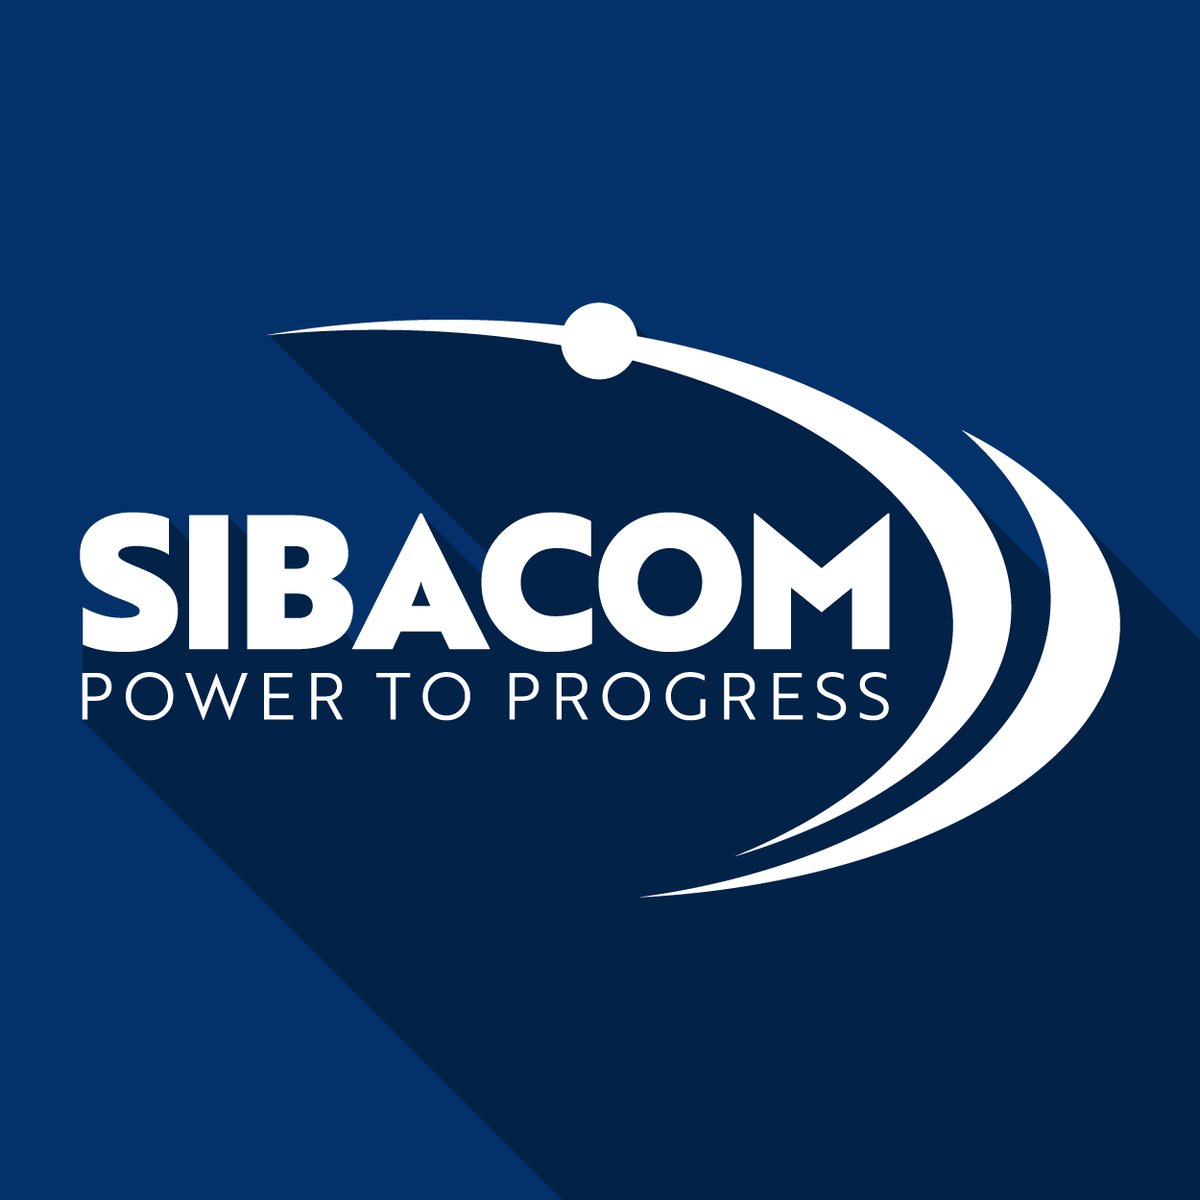 SIBACOM Logo. Power to Progress